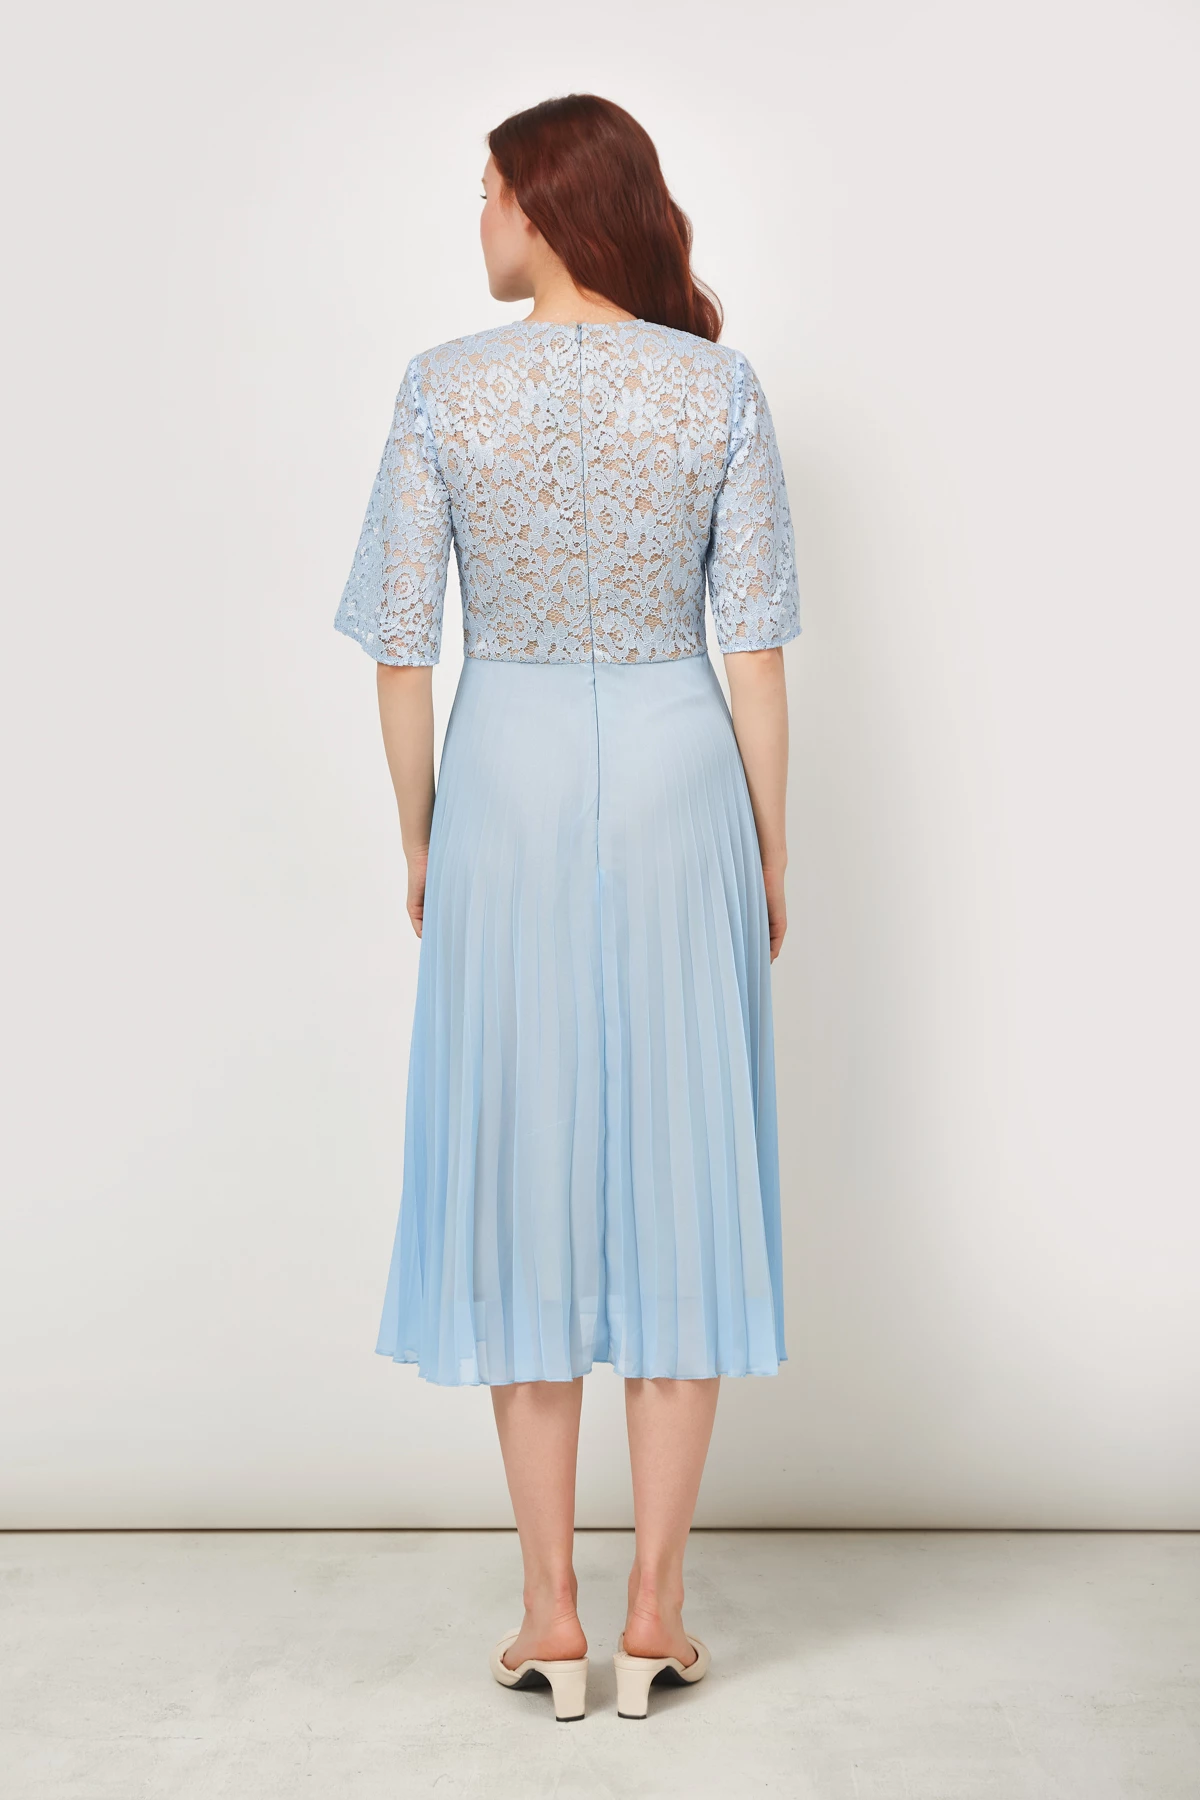 Midi dress in blue lace and chiffon , photo 5